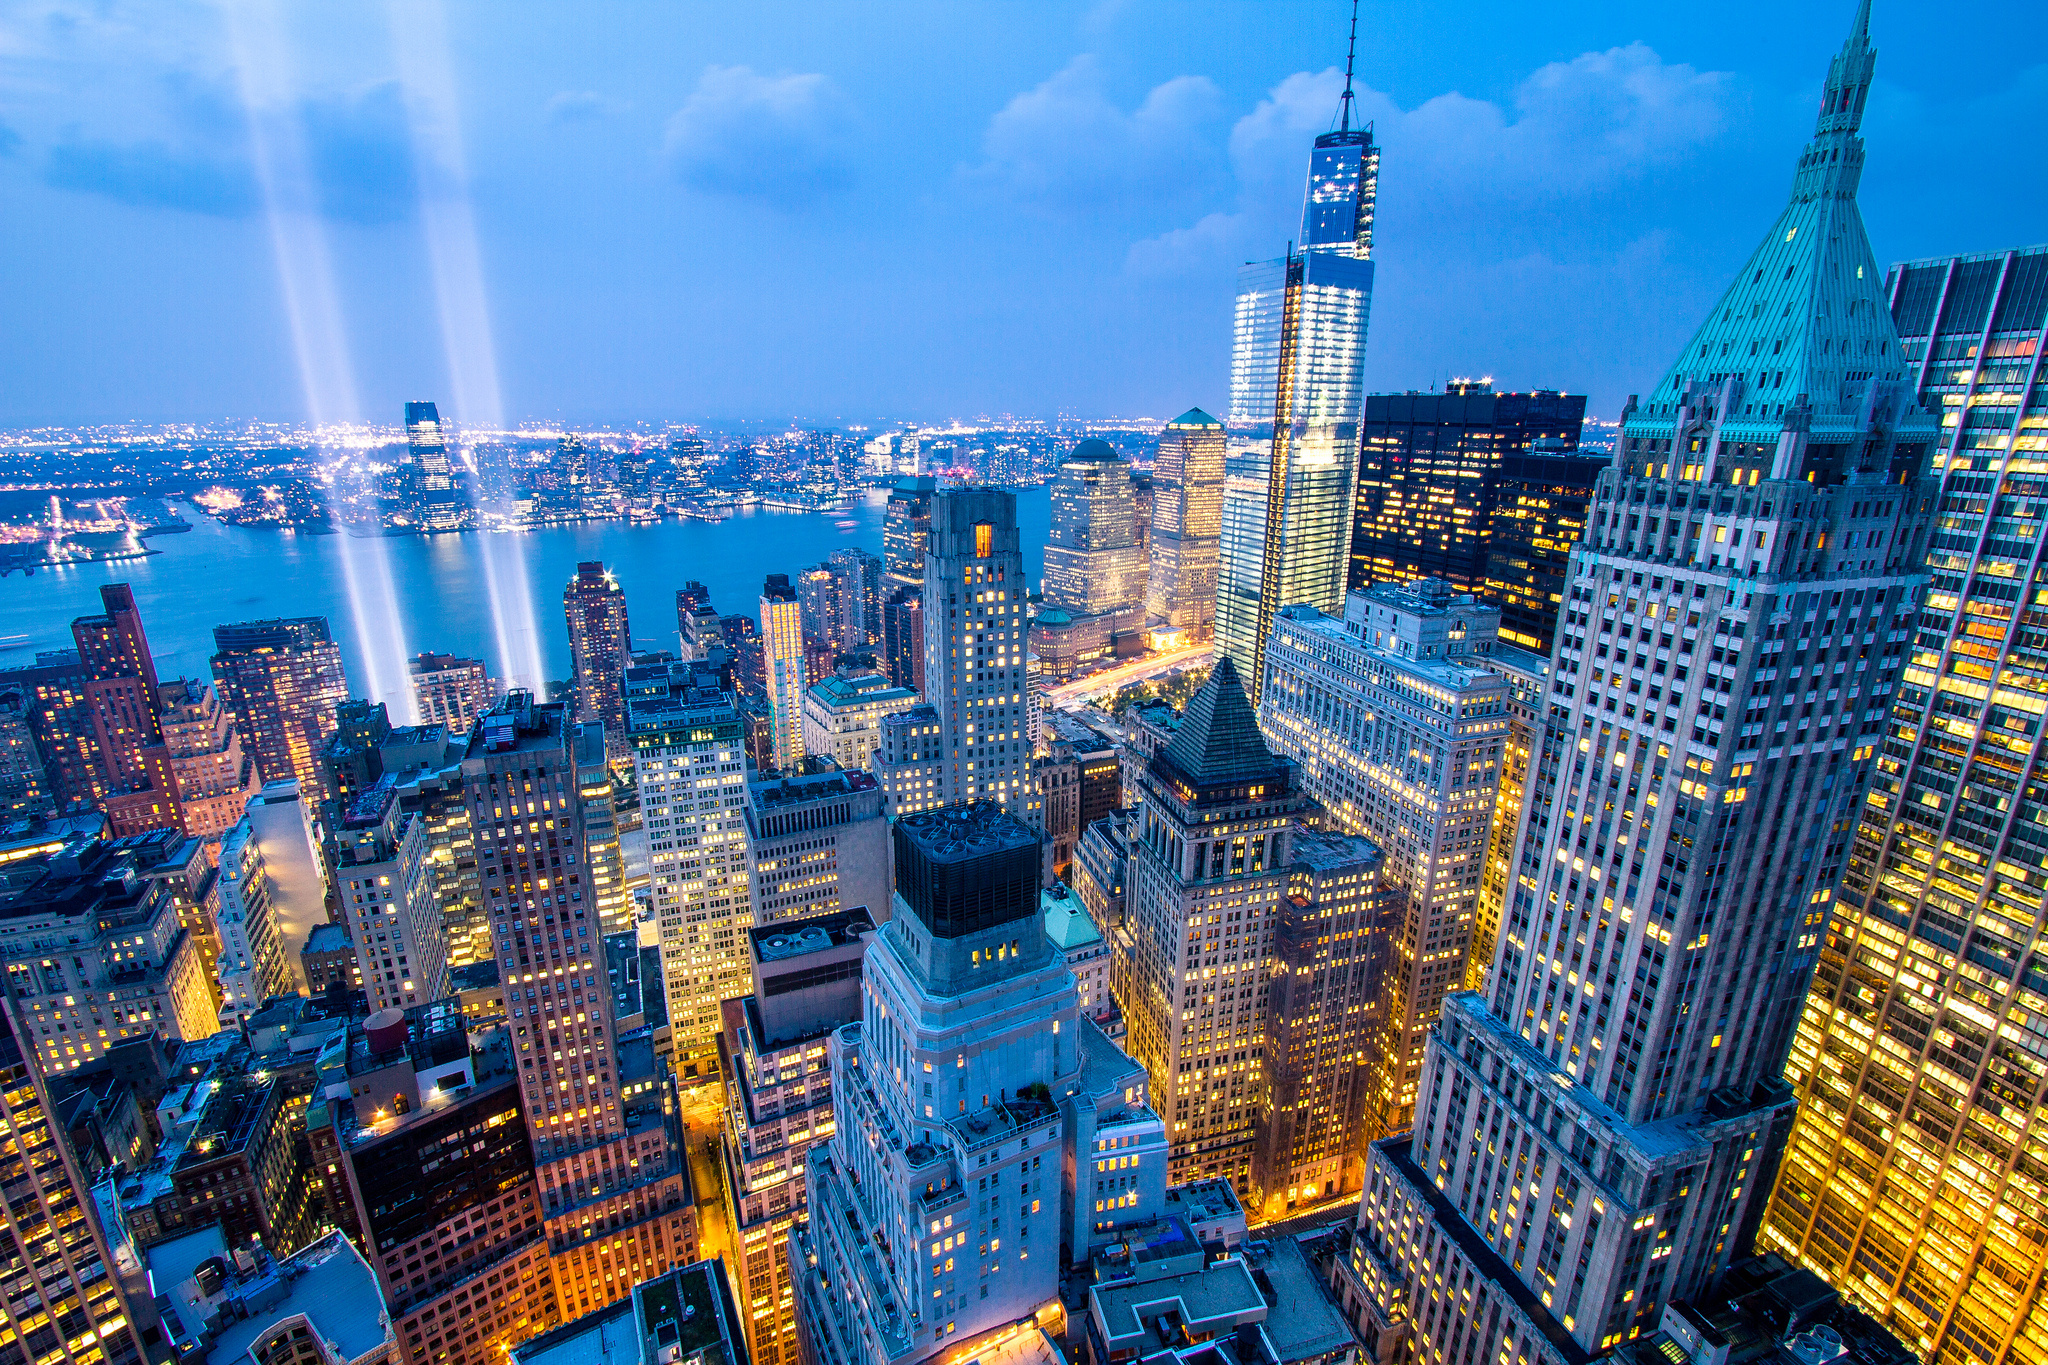 Hình nền Skyline New York City Night: Bức hình nền này mang lại không khí tươi mới cho điện thoại hoặc máy tính bạn. Với Skyline New York City Night, bạn sẽ thấy được vẻ đẹp tuyệt vời của thành phố này, được bao phủ bởi ánh sáng ấm áp và những tòa nhà trải dài đến tận chân trời.